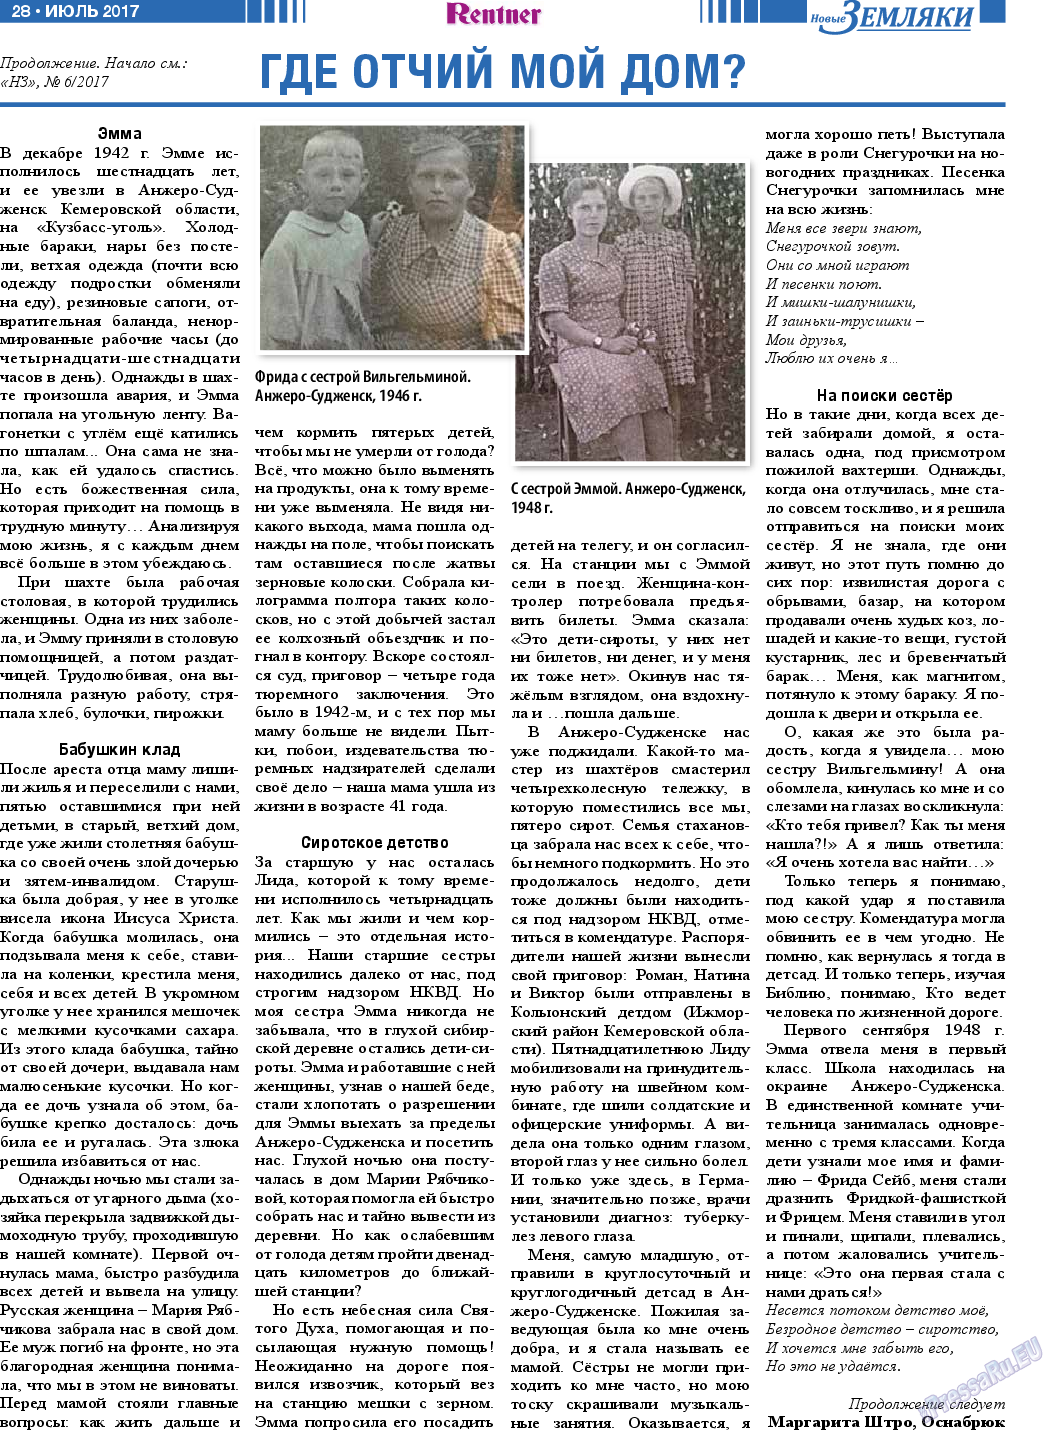 Новые Земляки, газета. 2017 №7 стр.28